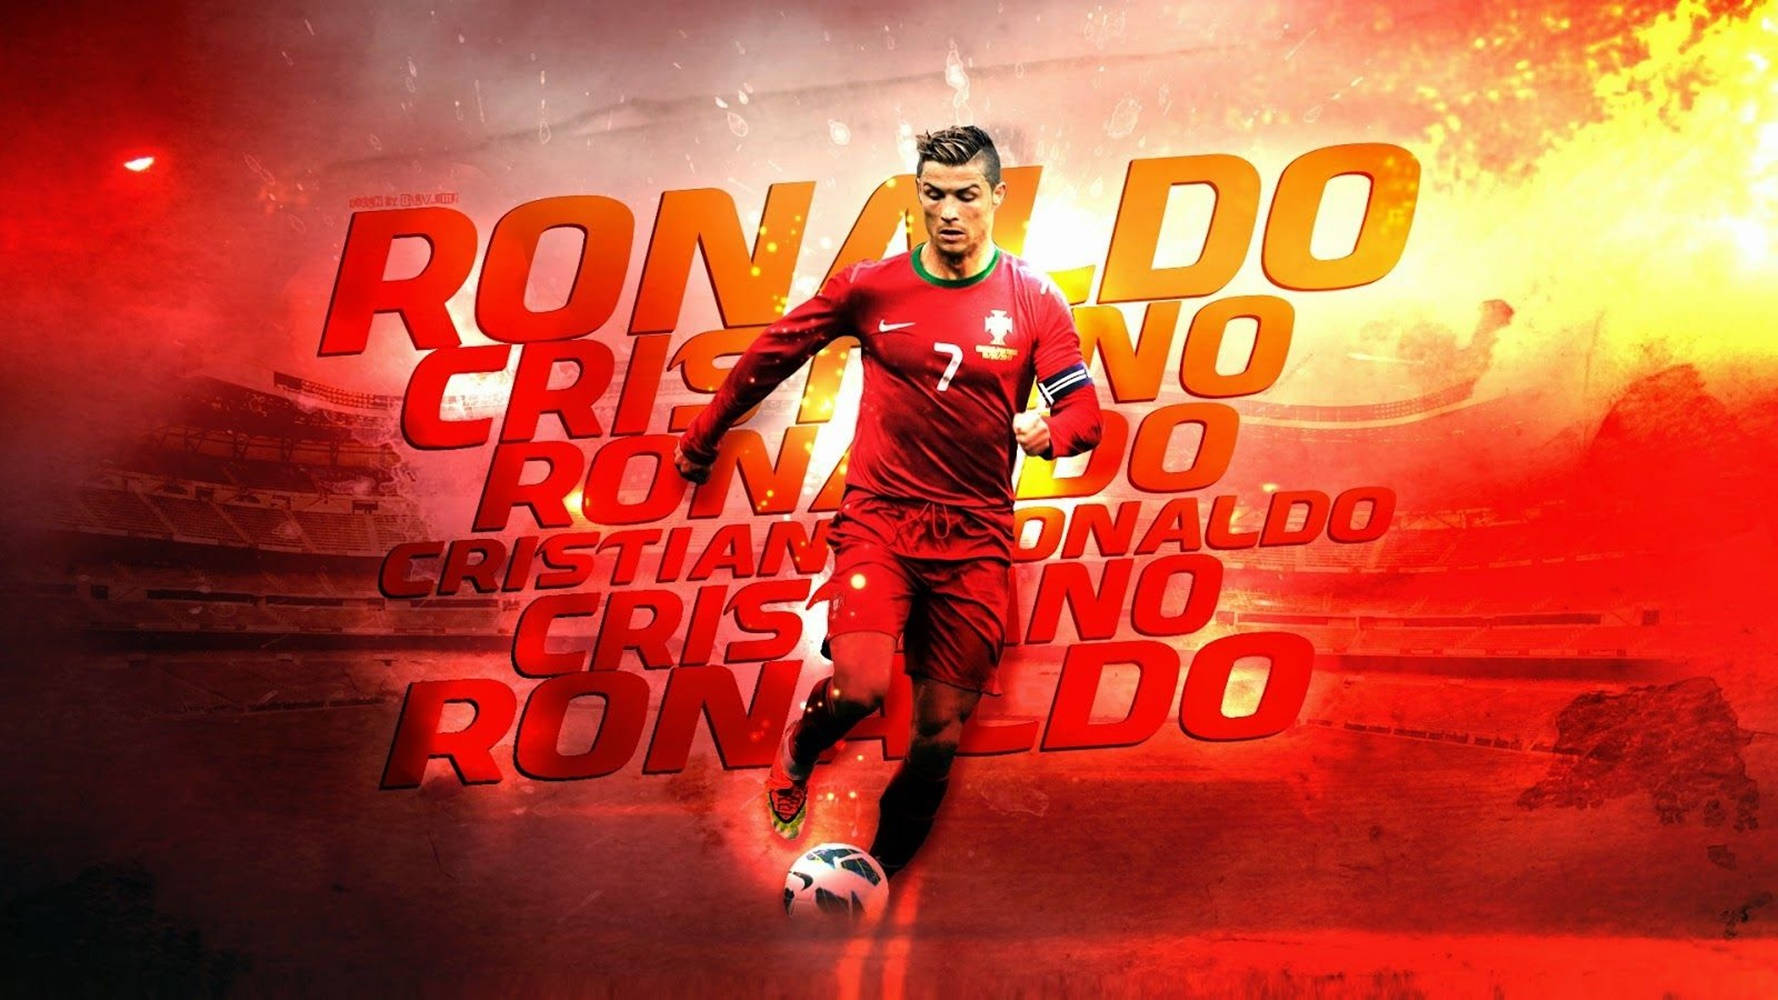 Free Cristiano Ronaldo Wallpaper Downloads, [300+] Cristiano Ronaldo  Wallpapers for FREE 